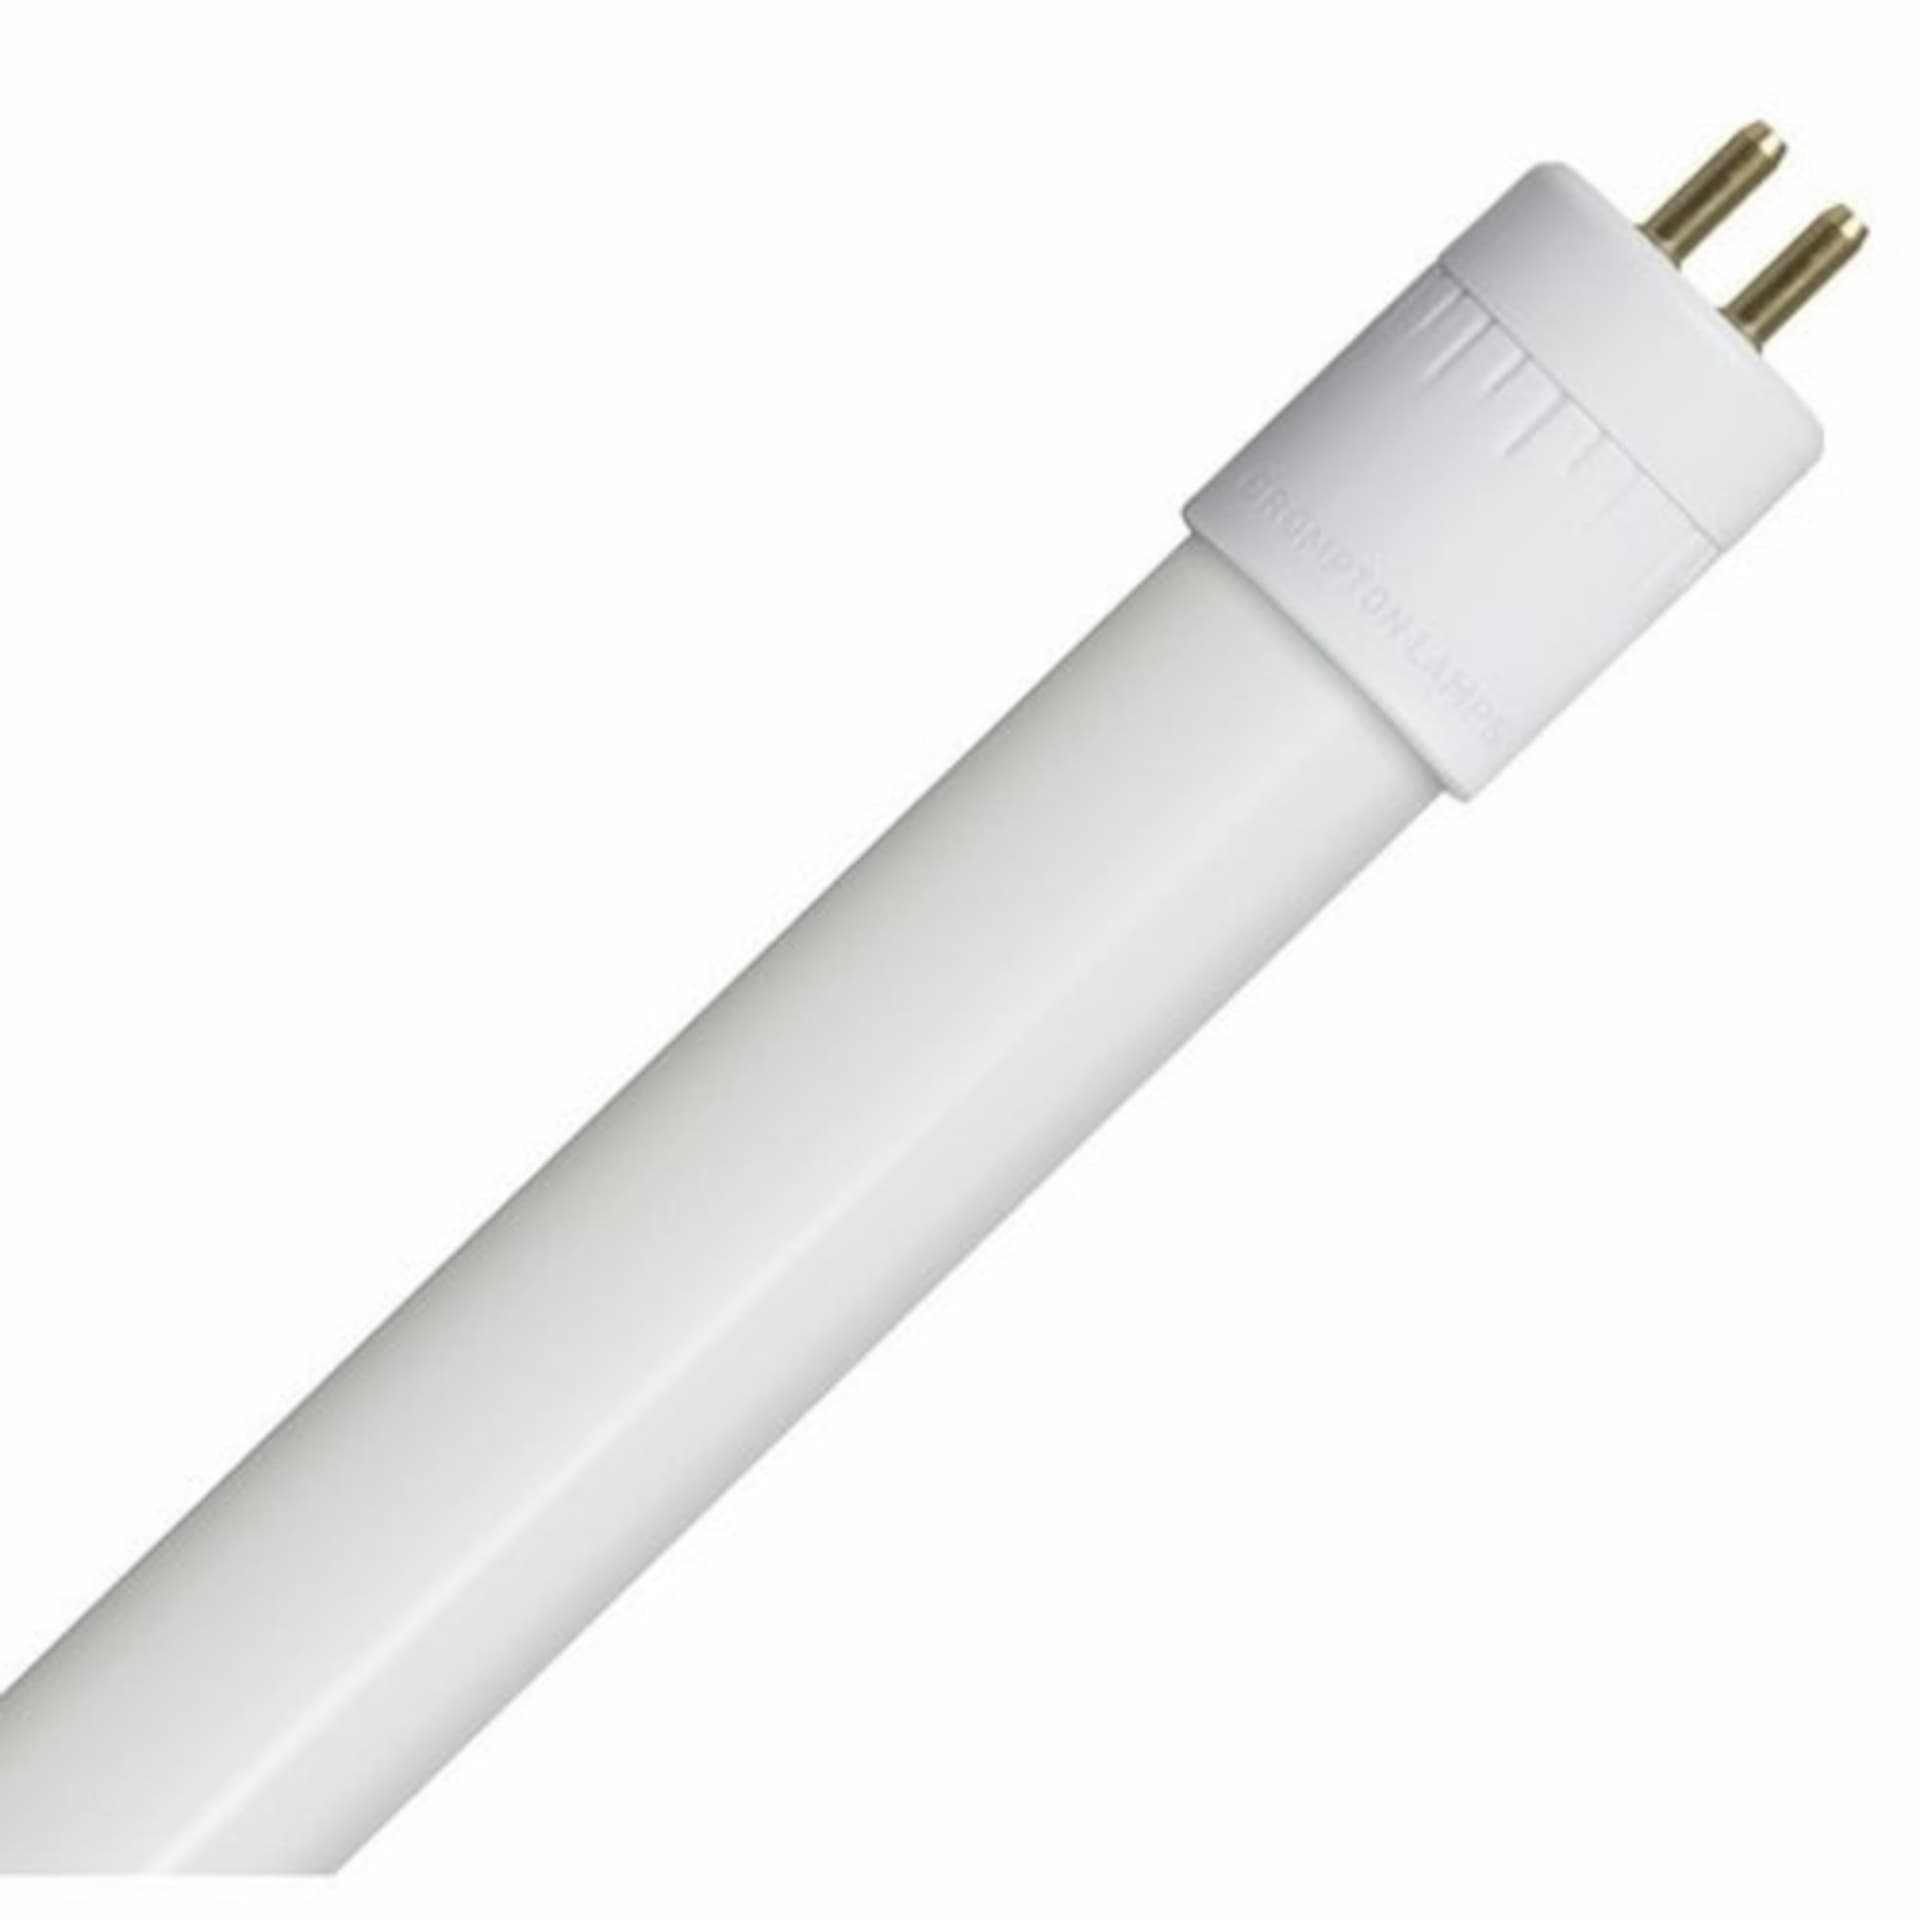 A fluorescent bulb